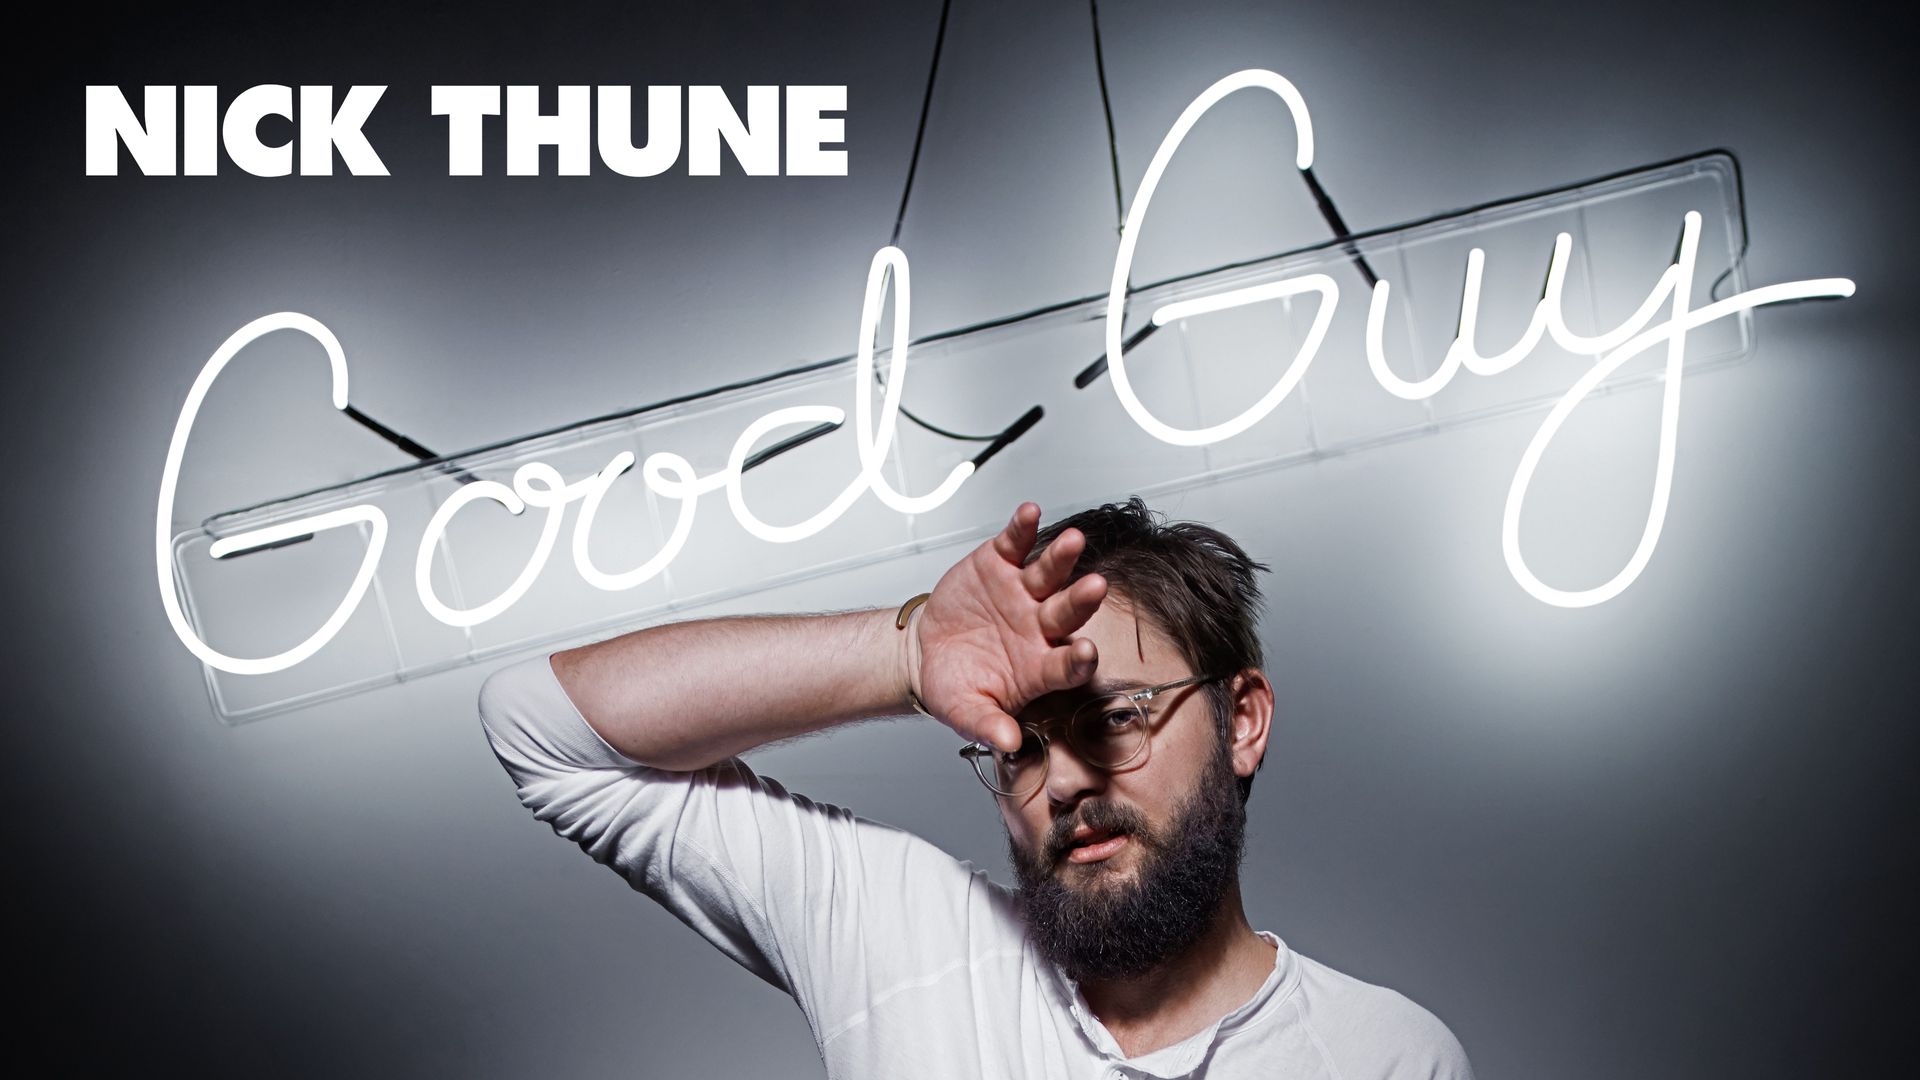 Nick Thune: Good Guy Backdrop